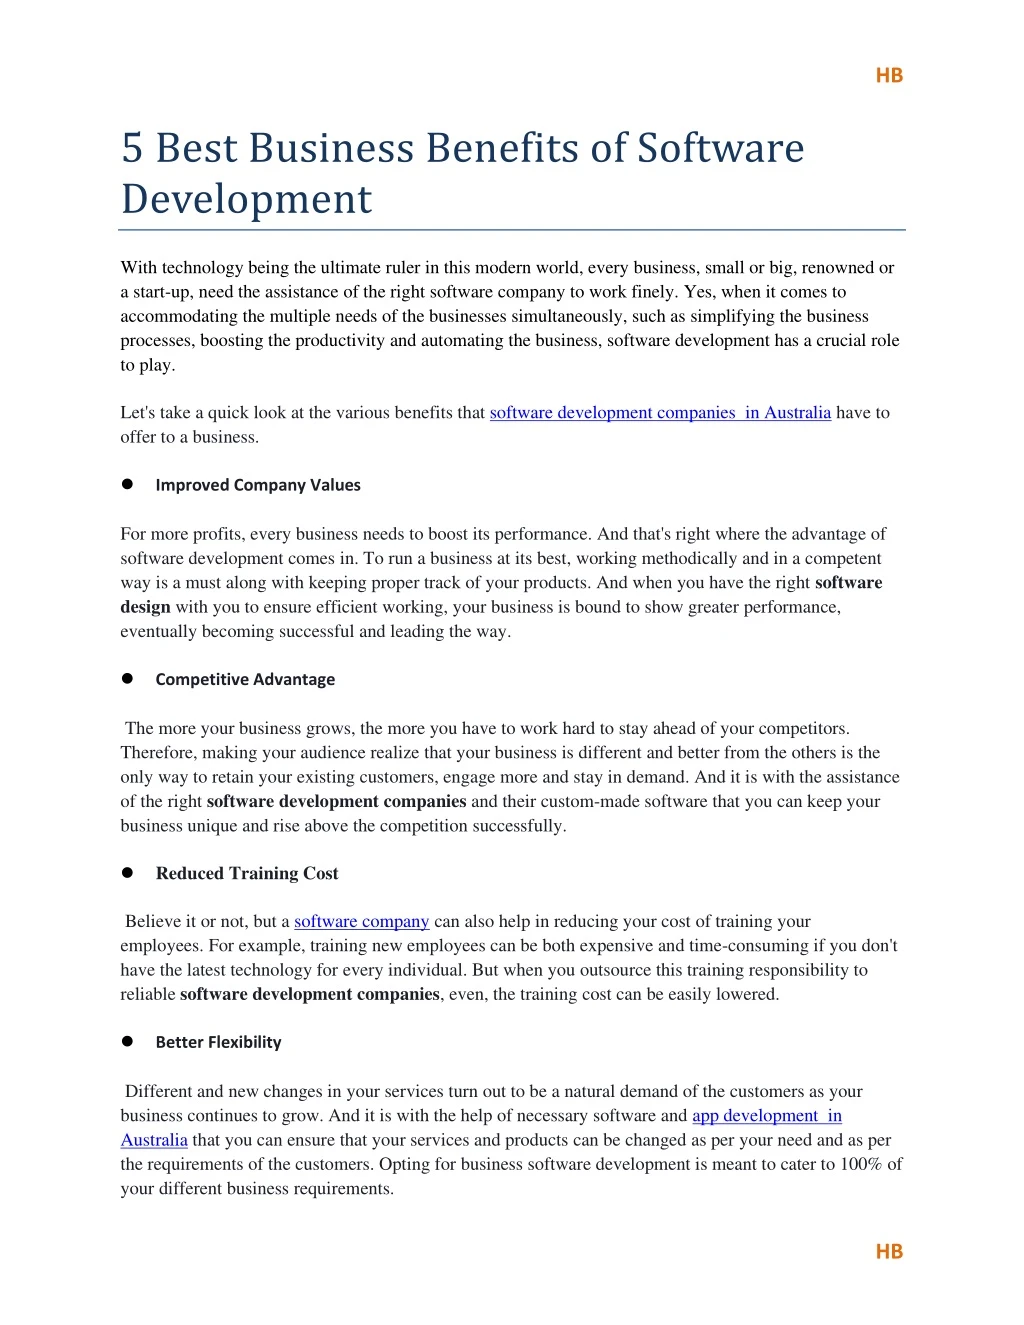 5 best business benefits of software development